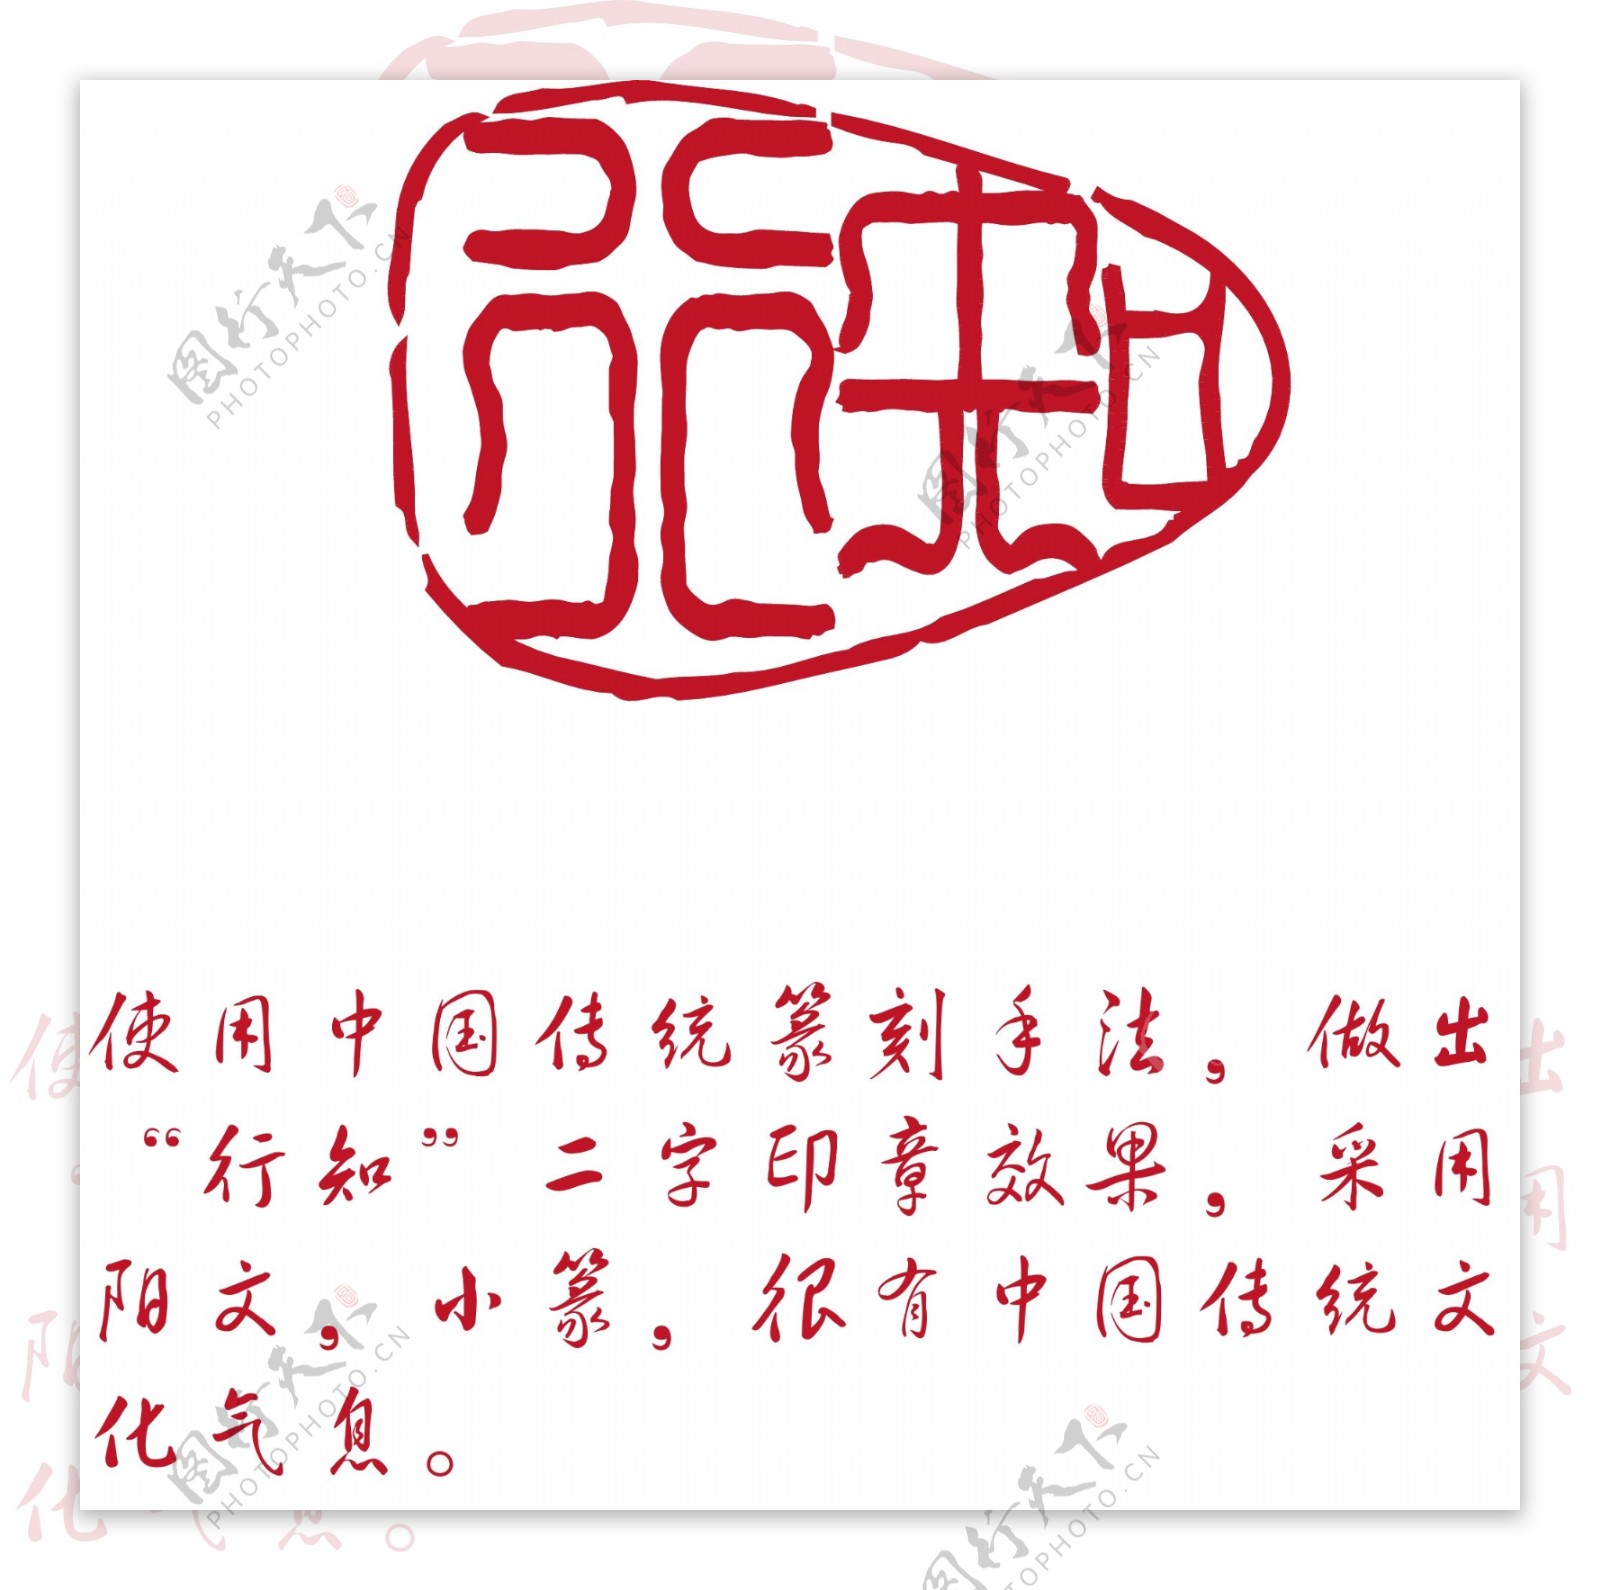 中国传统篆刻印章LOGO图片